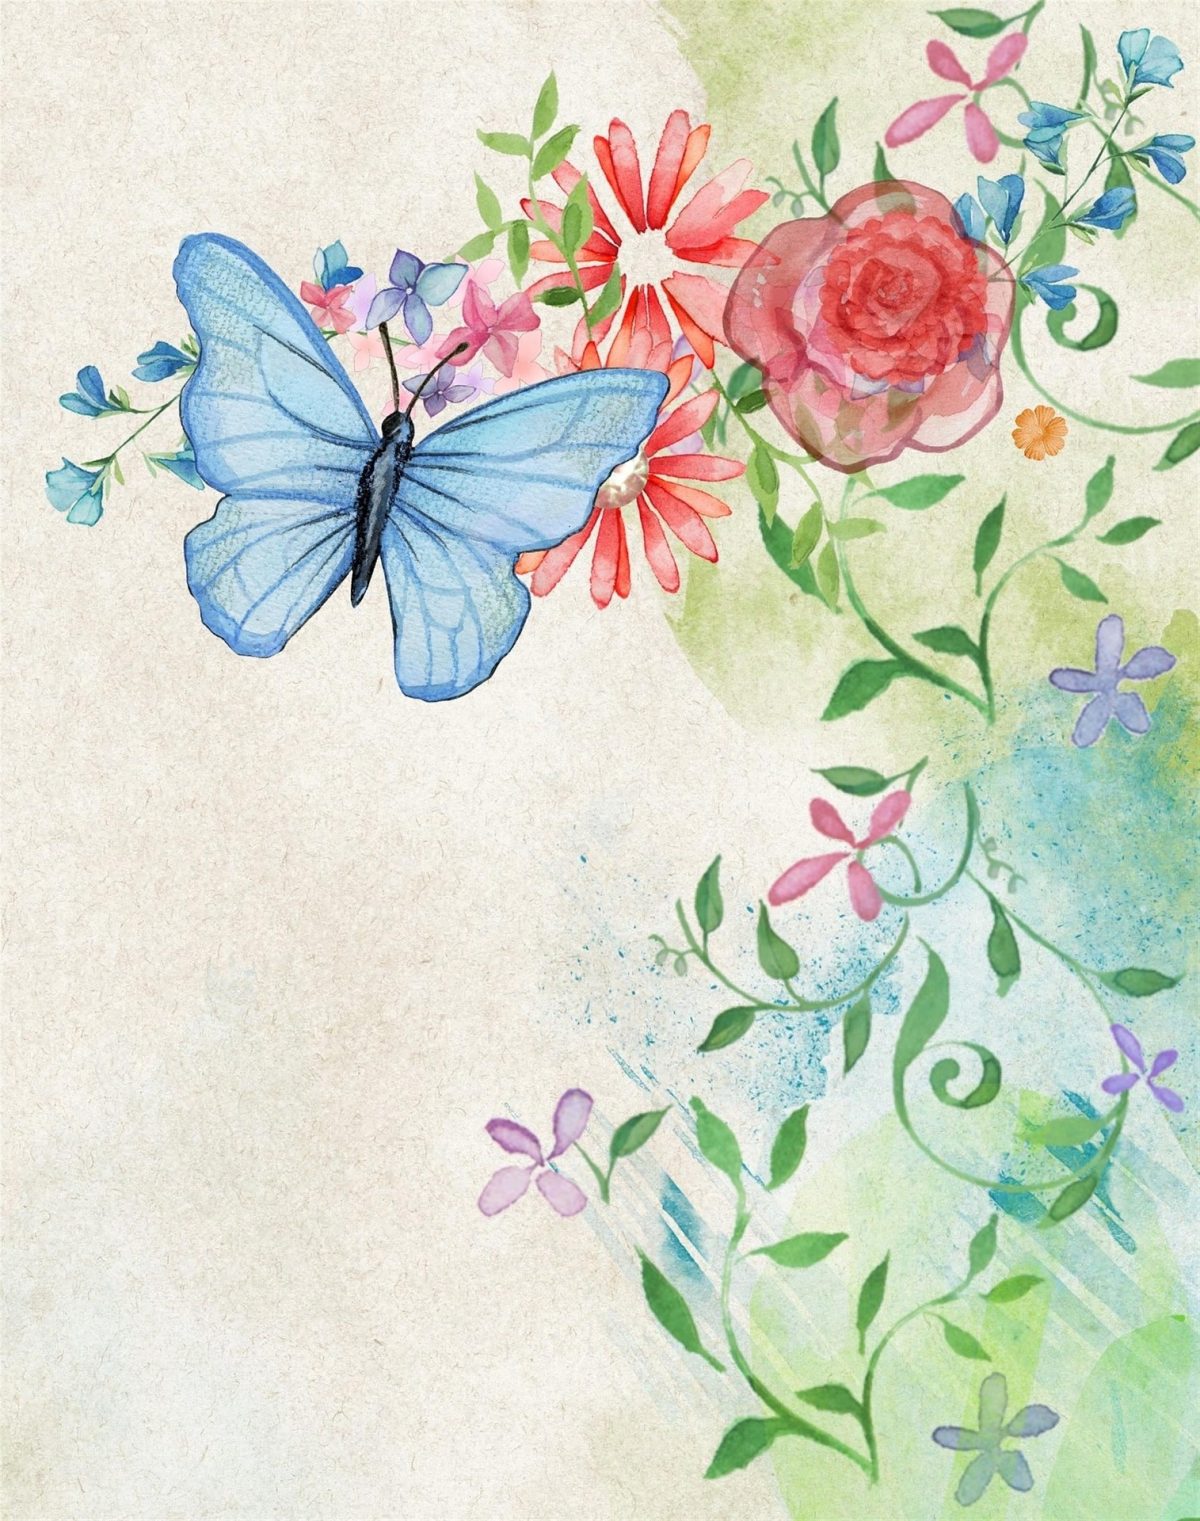 Lo schema del romanzo "Su ali di farfalla": collegamenti e elementi-base della violenza sulle donne